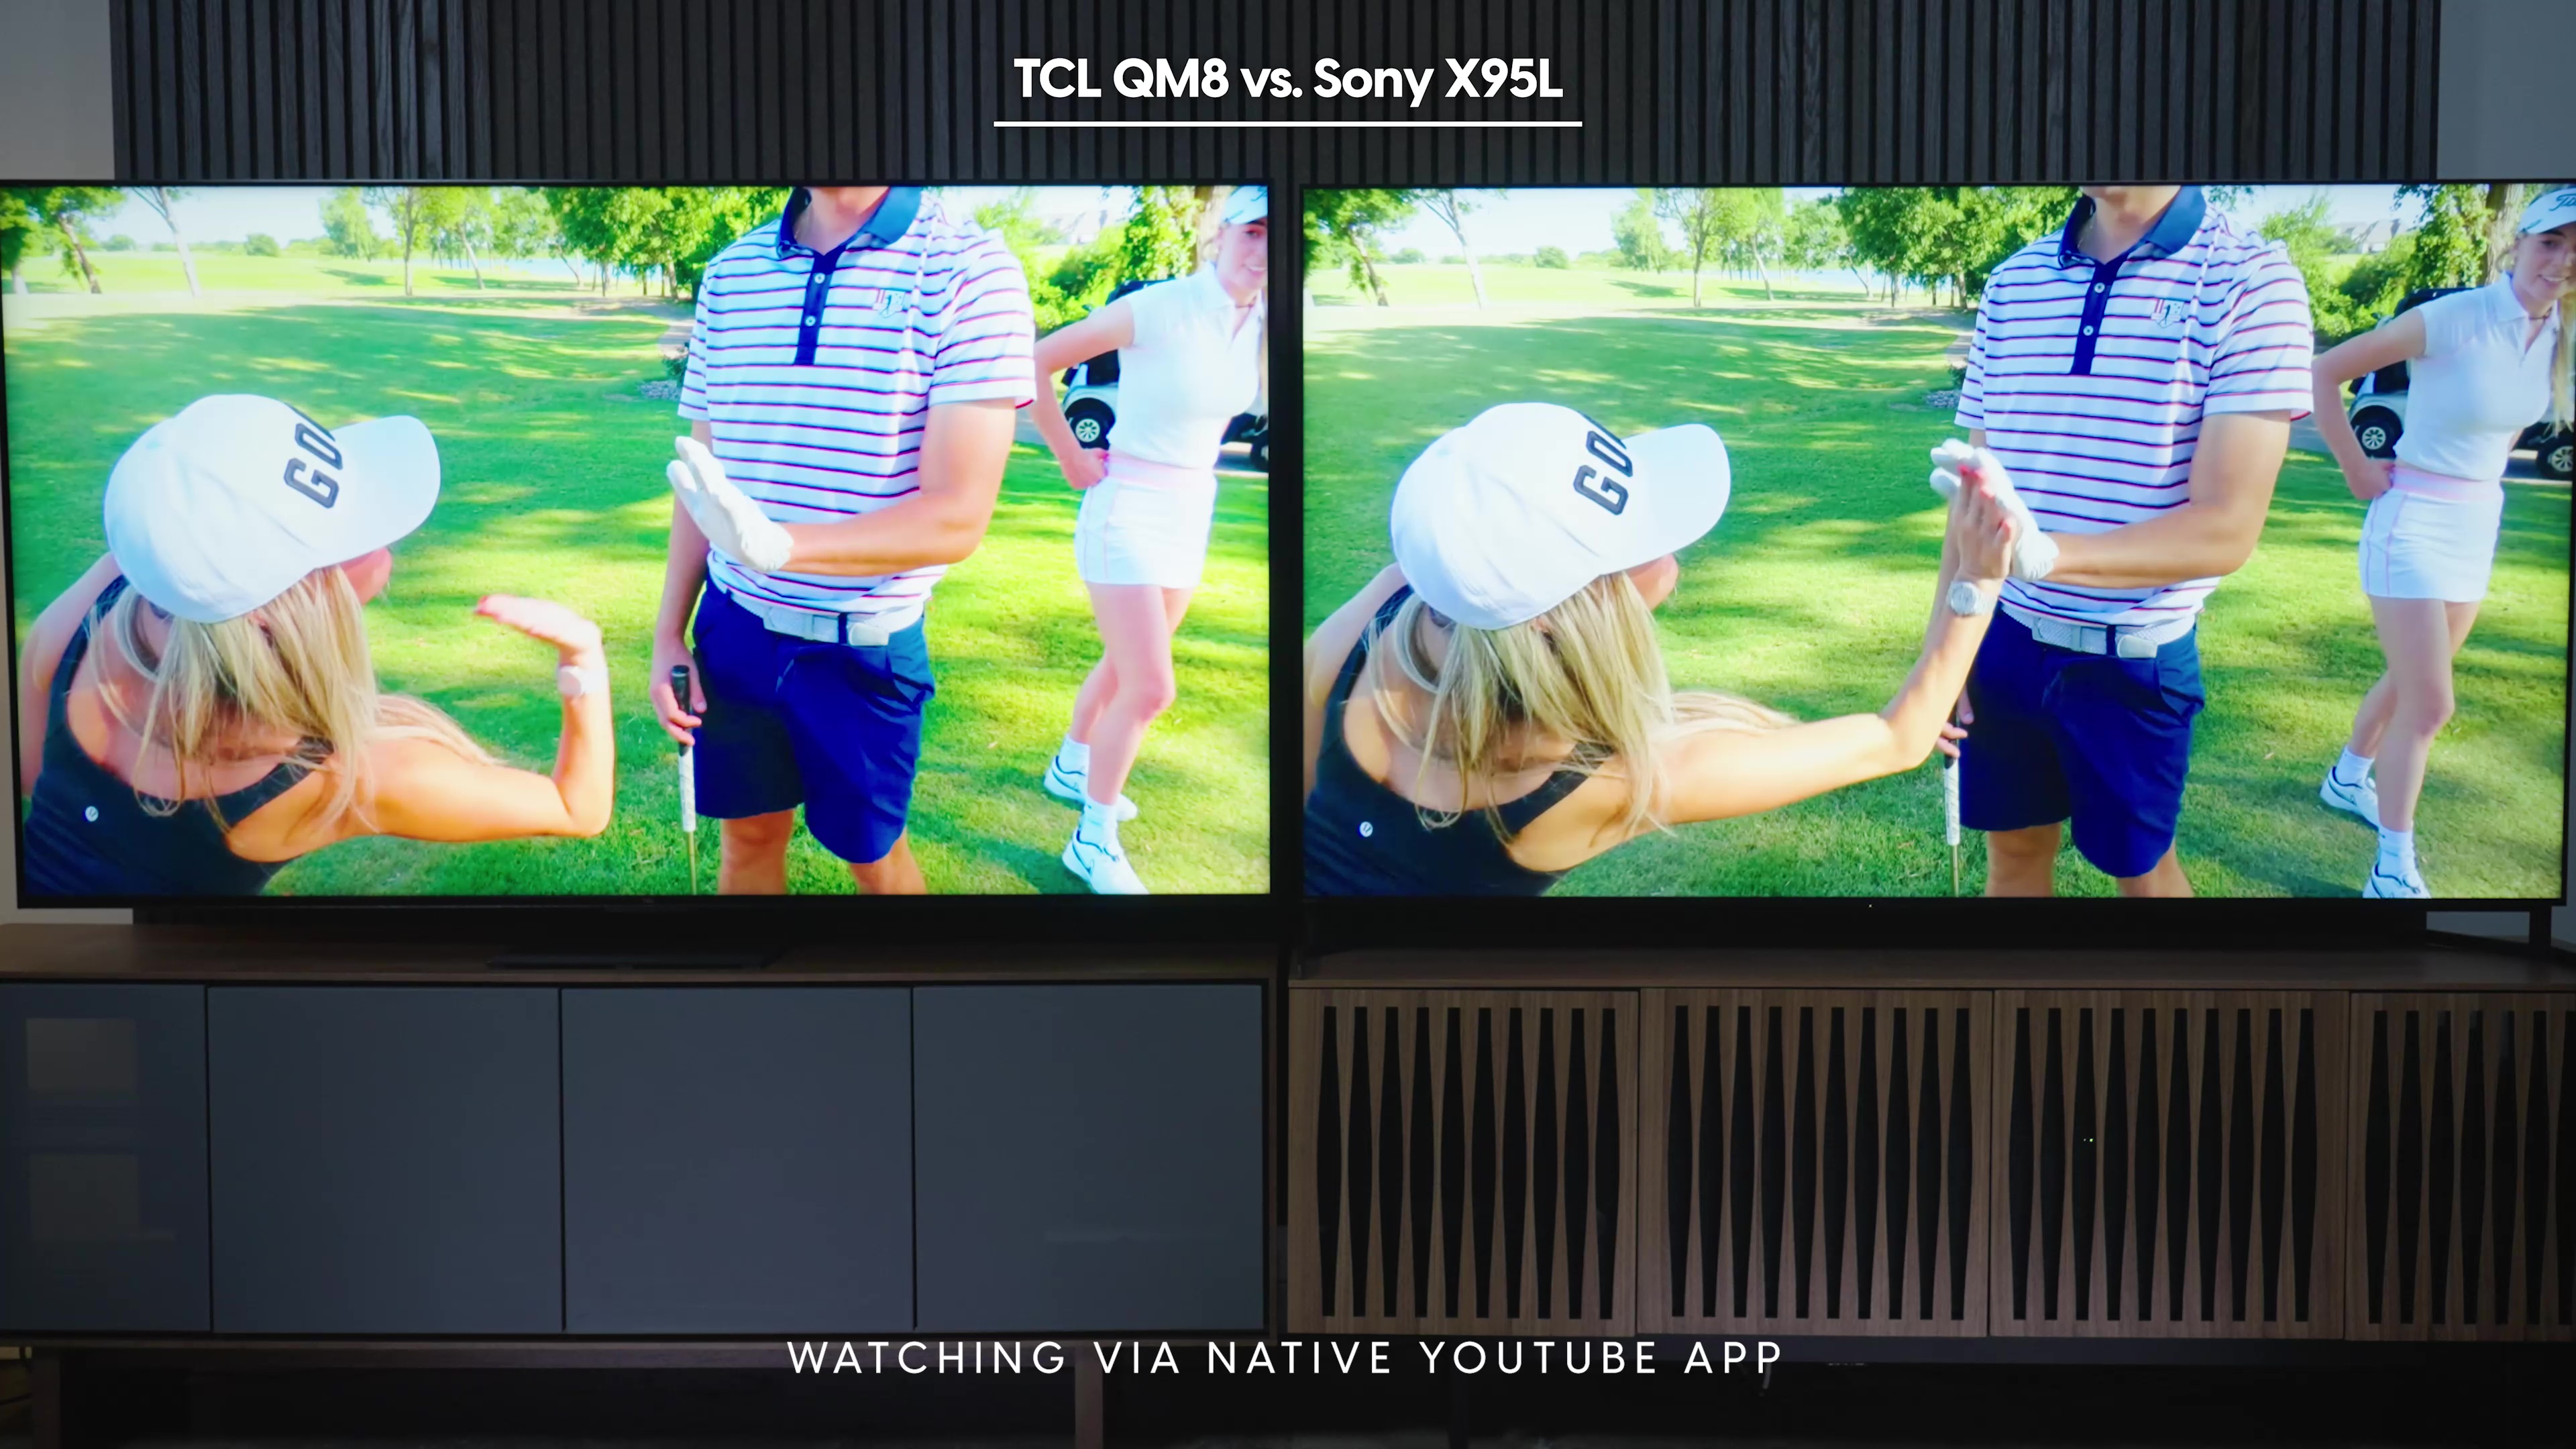 Comparação lado a lado de uma captura de tela do canal Good Good Golf no aplicativo nativo do YouTube no Sony Bravia X95L vs TCL QM8.